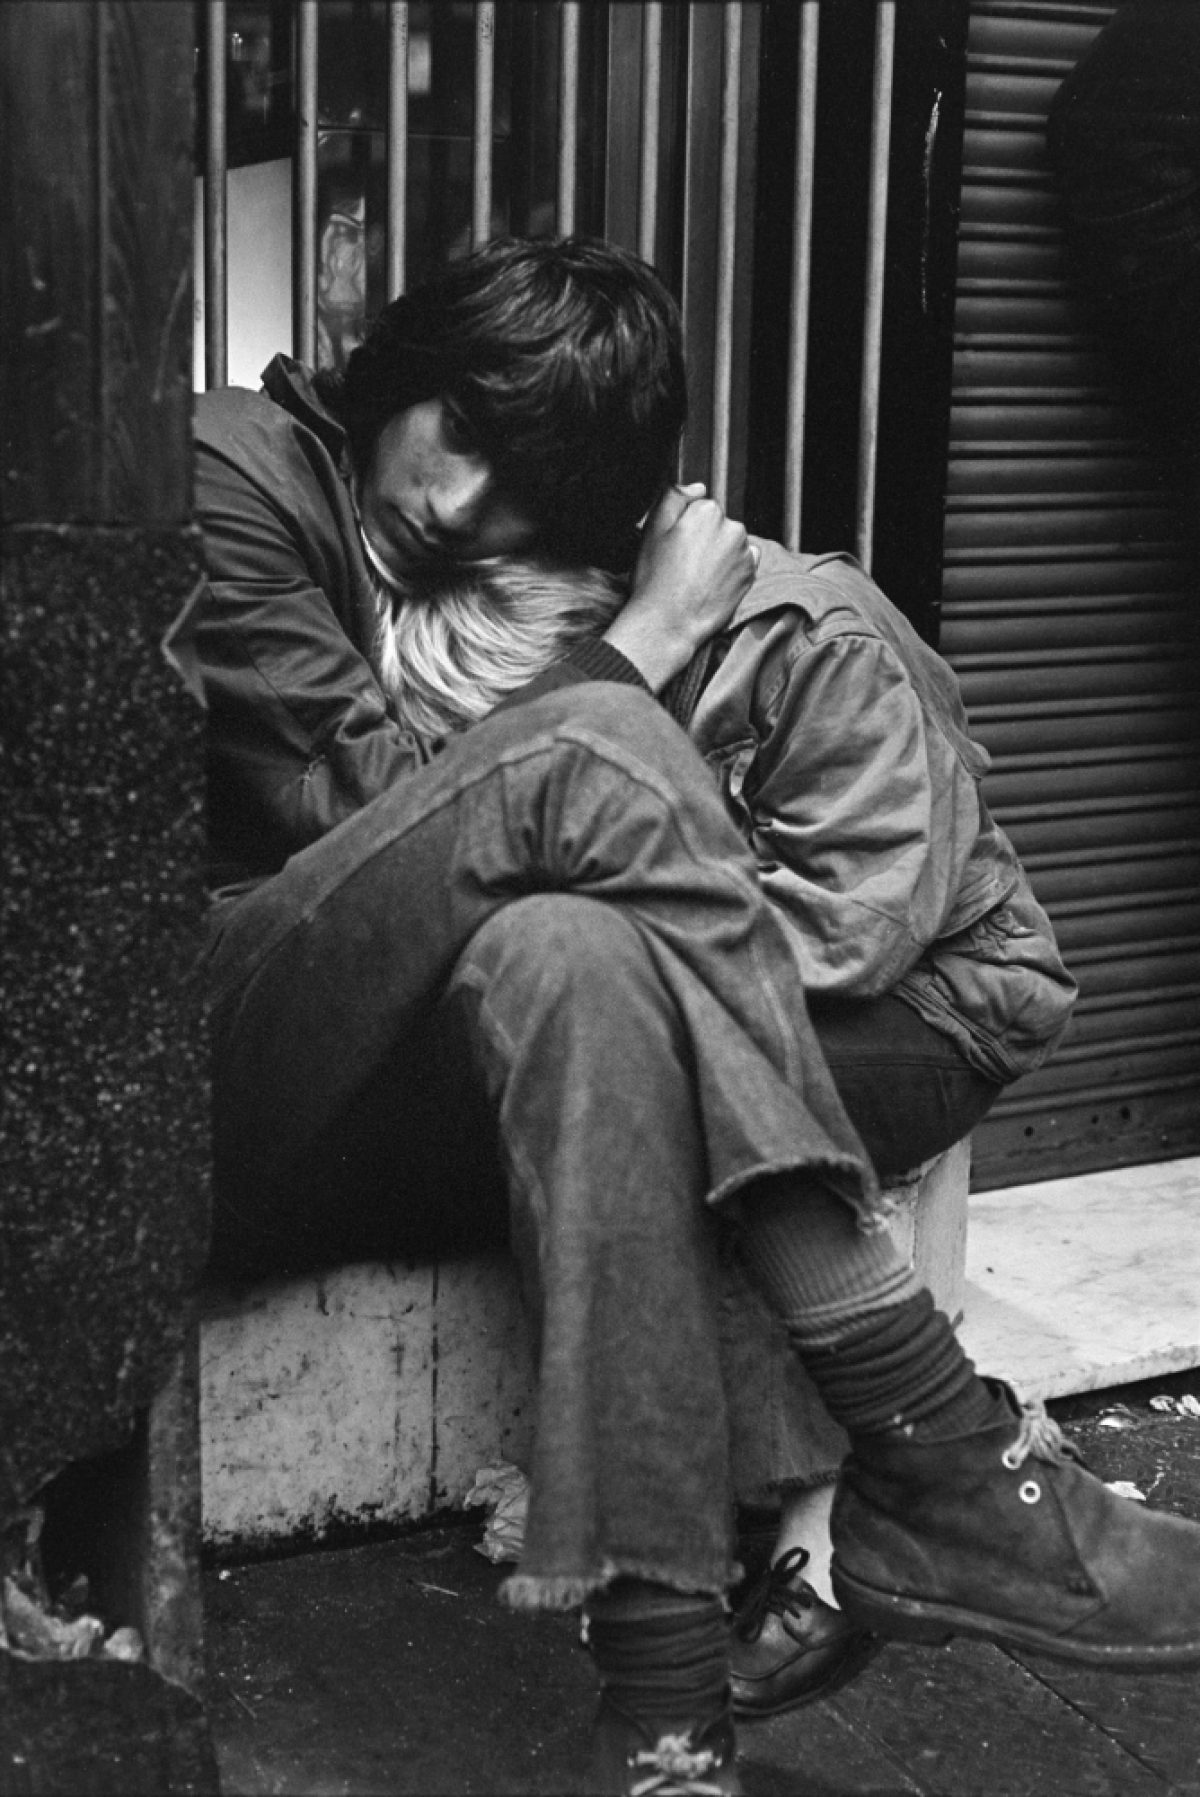 ”Det finns inget vackrare än vänskap och kärlek, det är allt jag vill ha och allt jag kan säga om livet”, sa en ung man medan han kramade sin vän. Foto: Markku Lepola / JOKA / Museiverket